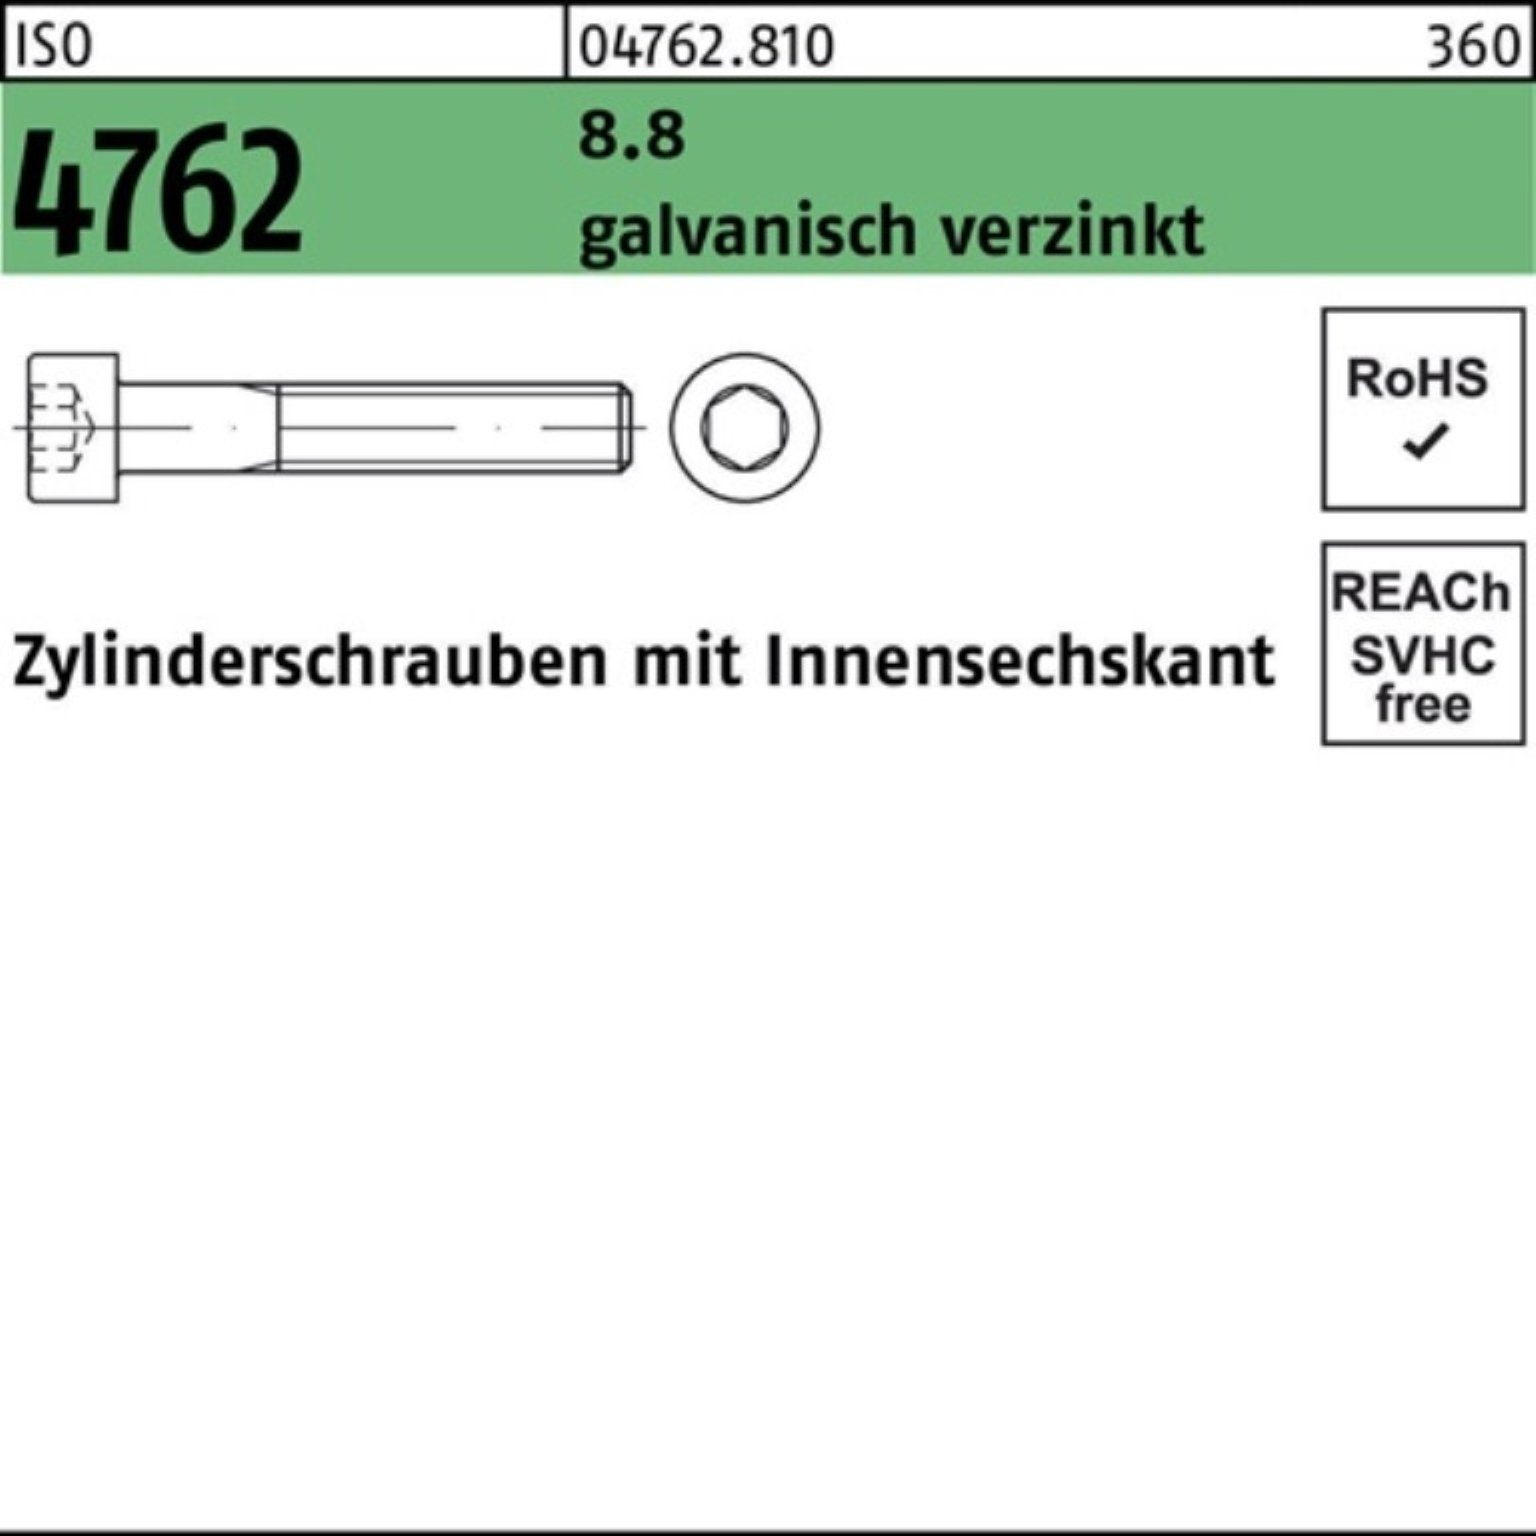 Innen-6kt Zylinderschraube 100er 8.8 4762 ISO galv.verz. Pack Reyher Zylinderschraube 1 M42x90